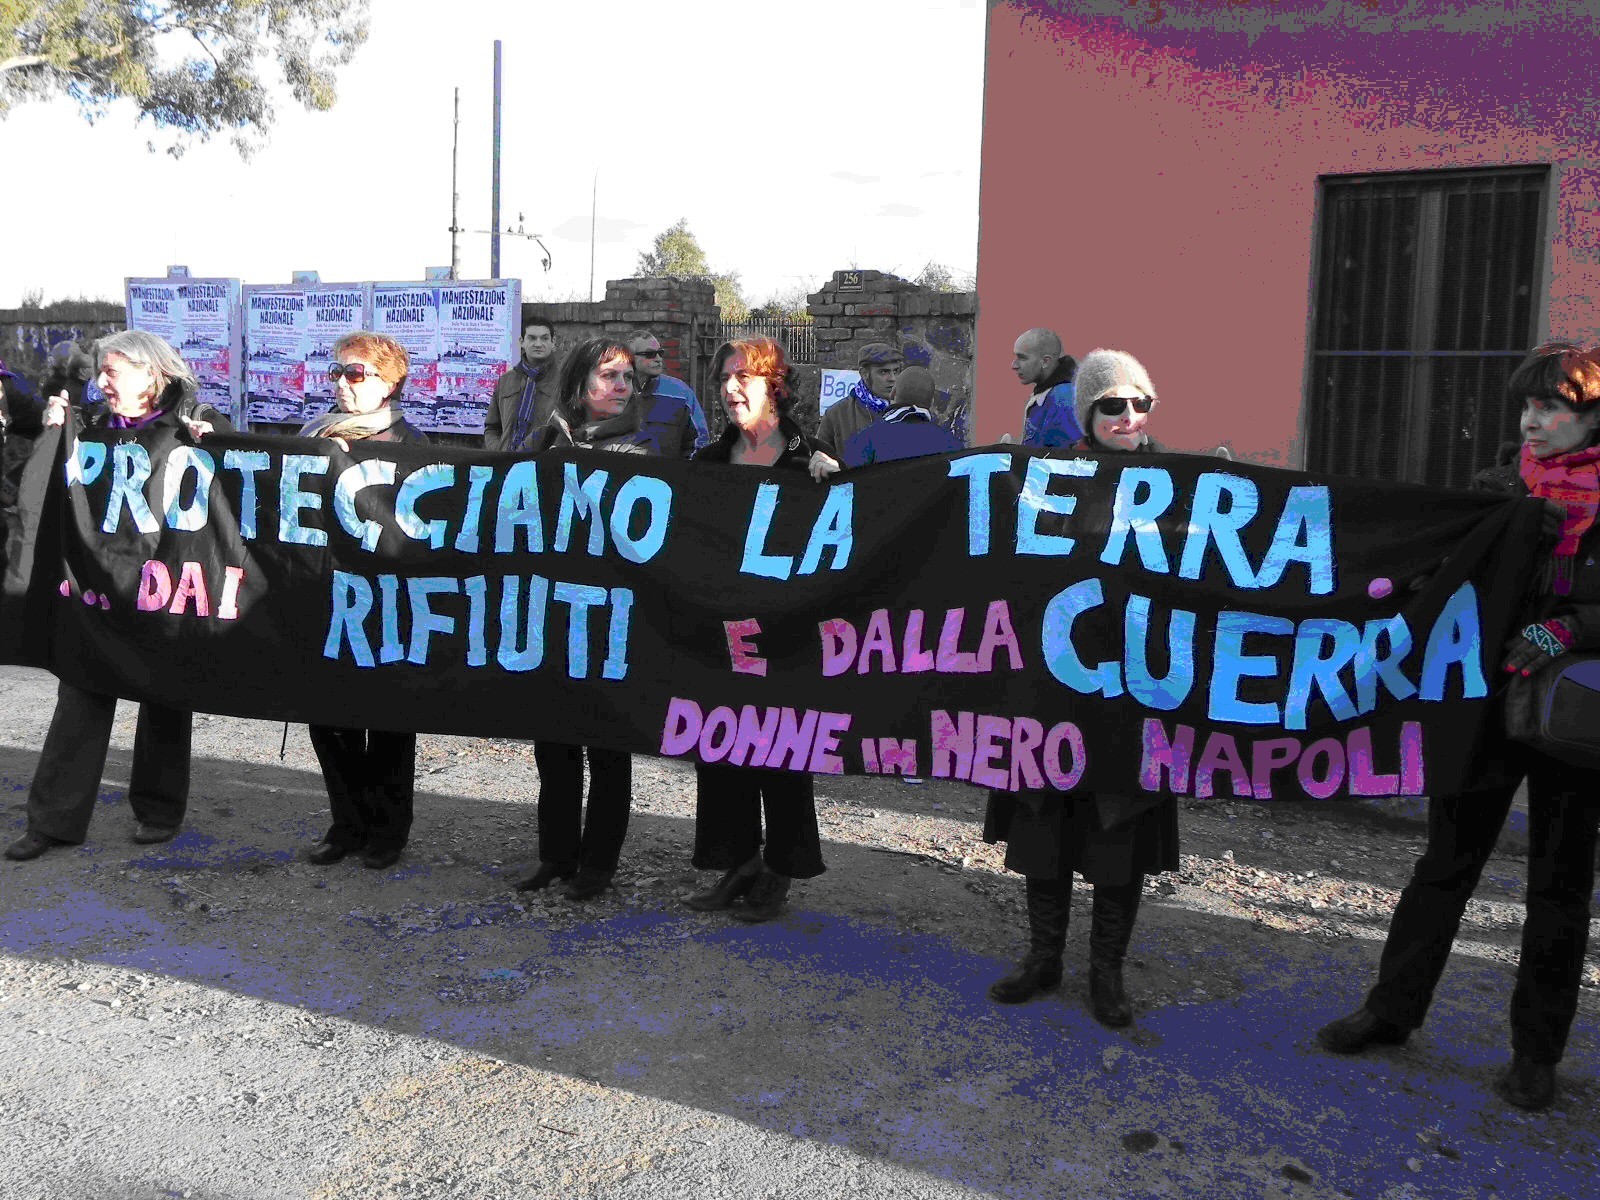 Donne in nero di Napoli